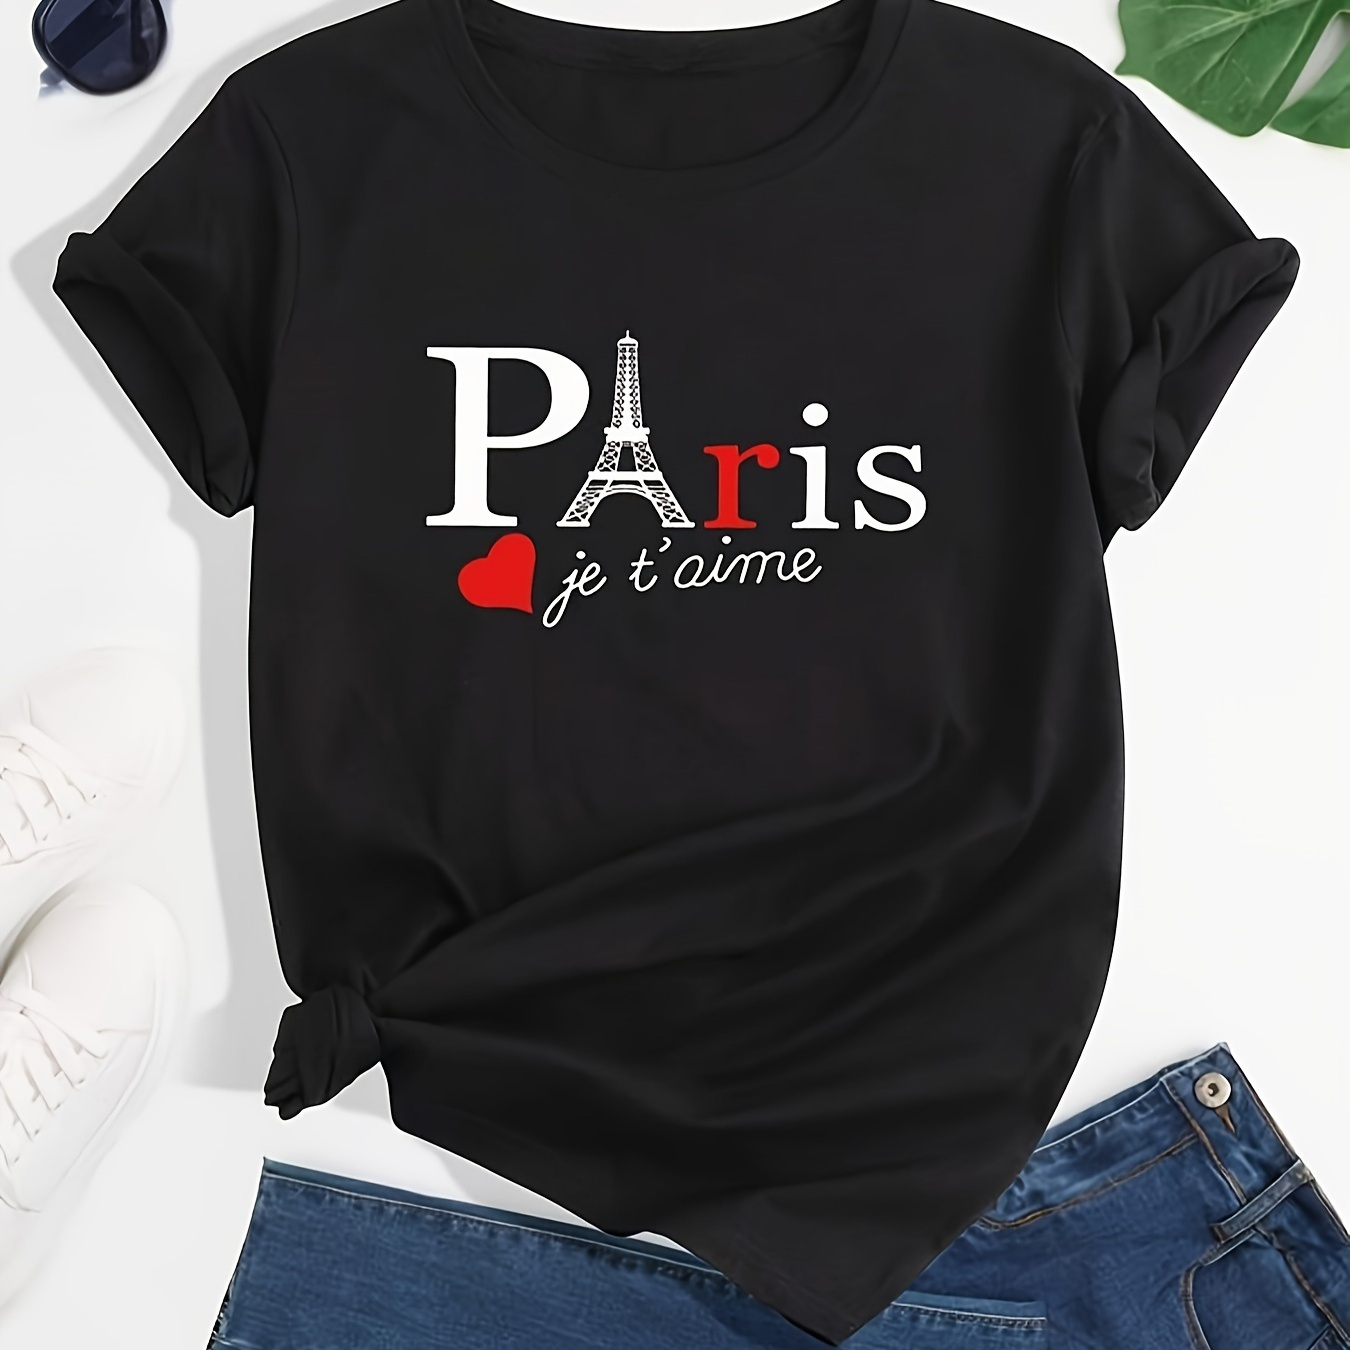 

Plus Size Paris Print T-shirt, Casual Short Sleeve Crew Neck T-shirt, Women's Plus Size Clothing